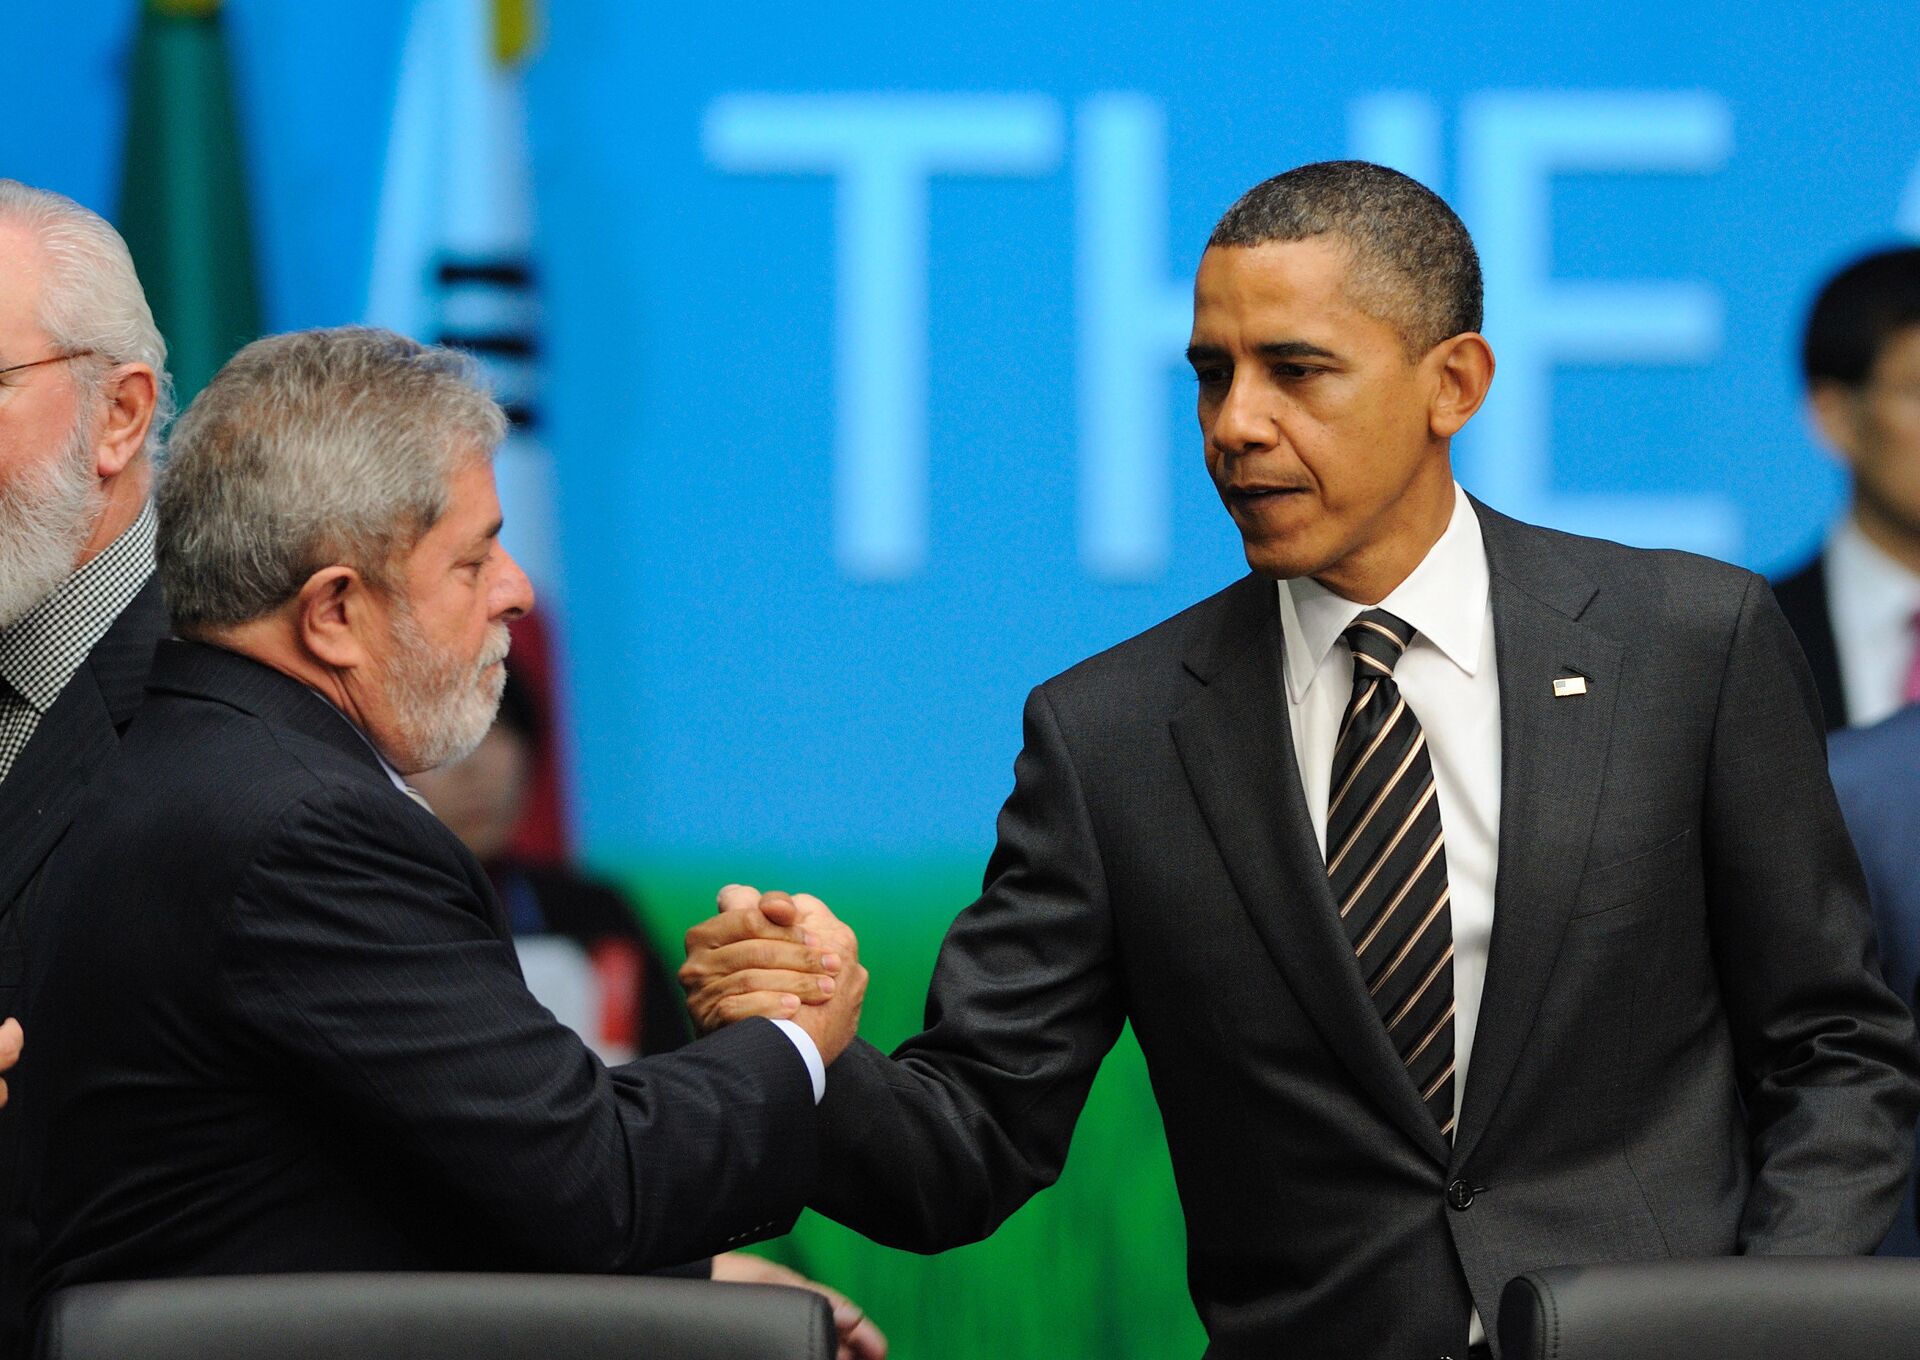 Os então presidentes de Brasil e EUA, Luiz Inácio Lula da Silva e Barack Obama, se cumprimentam durante encontro do G20 na Coreia do Sul (arquivo) - Sputnik Brasil, 1920, 26.01.2022